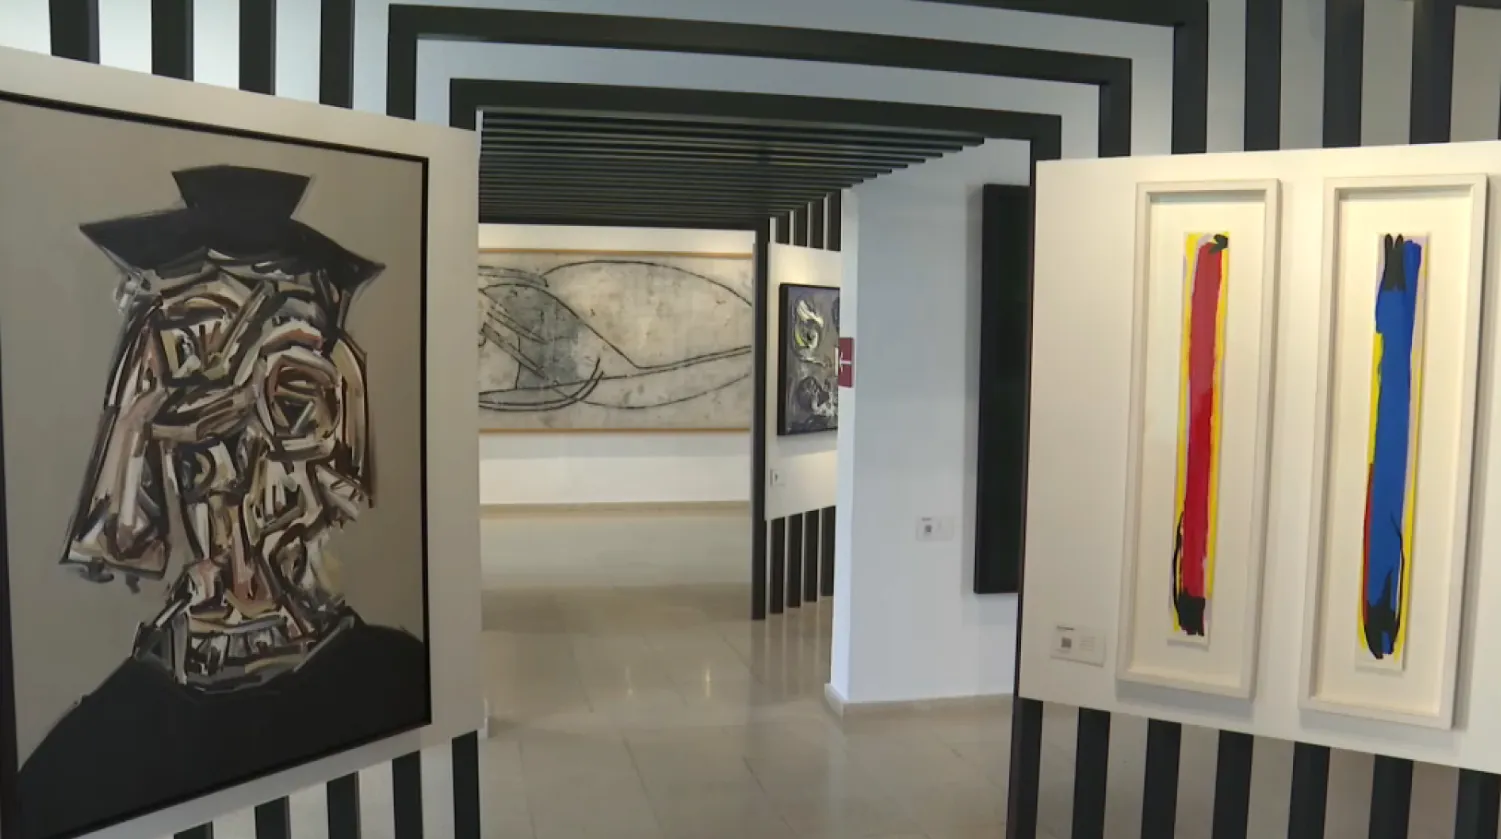 Més de 7.000 persones han visitat el Centre d’Art Contemporani d’Alaior durant el primer any